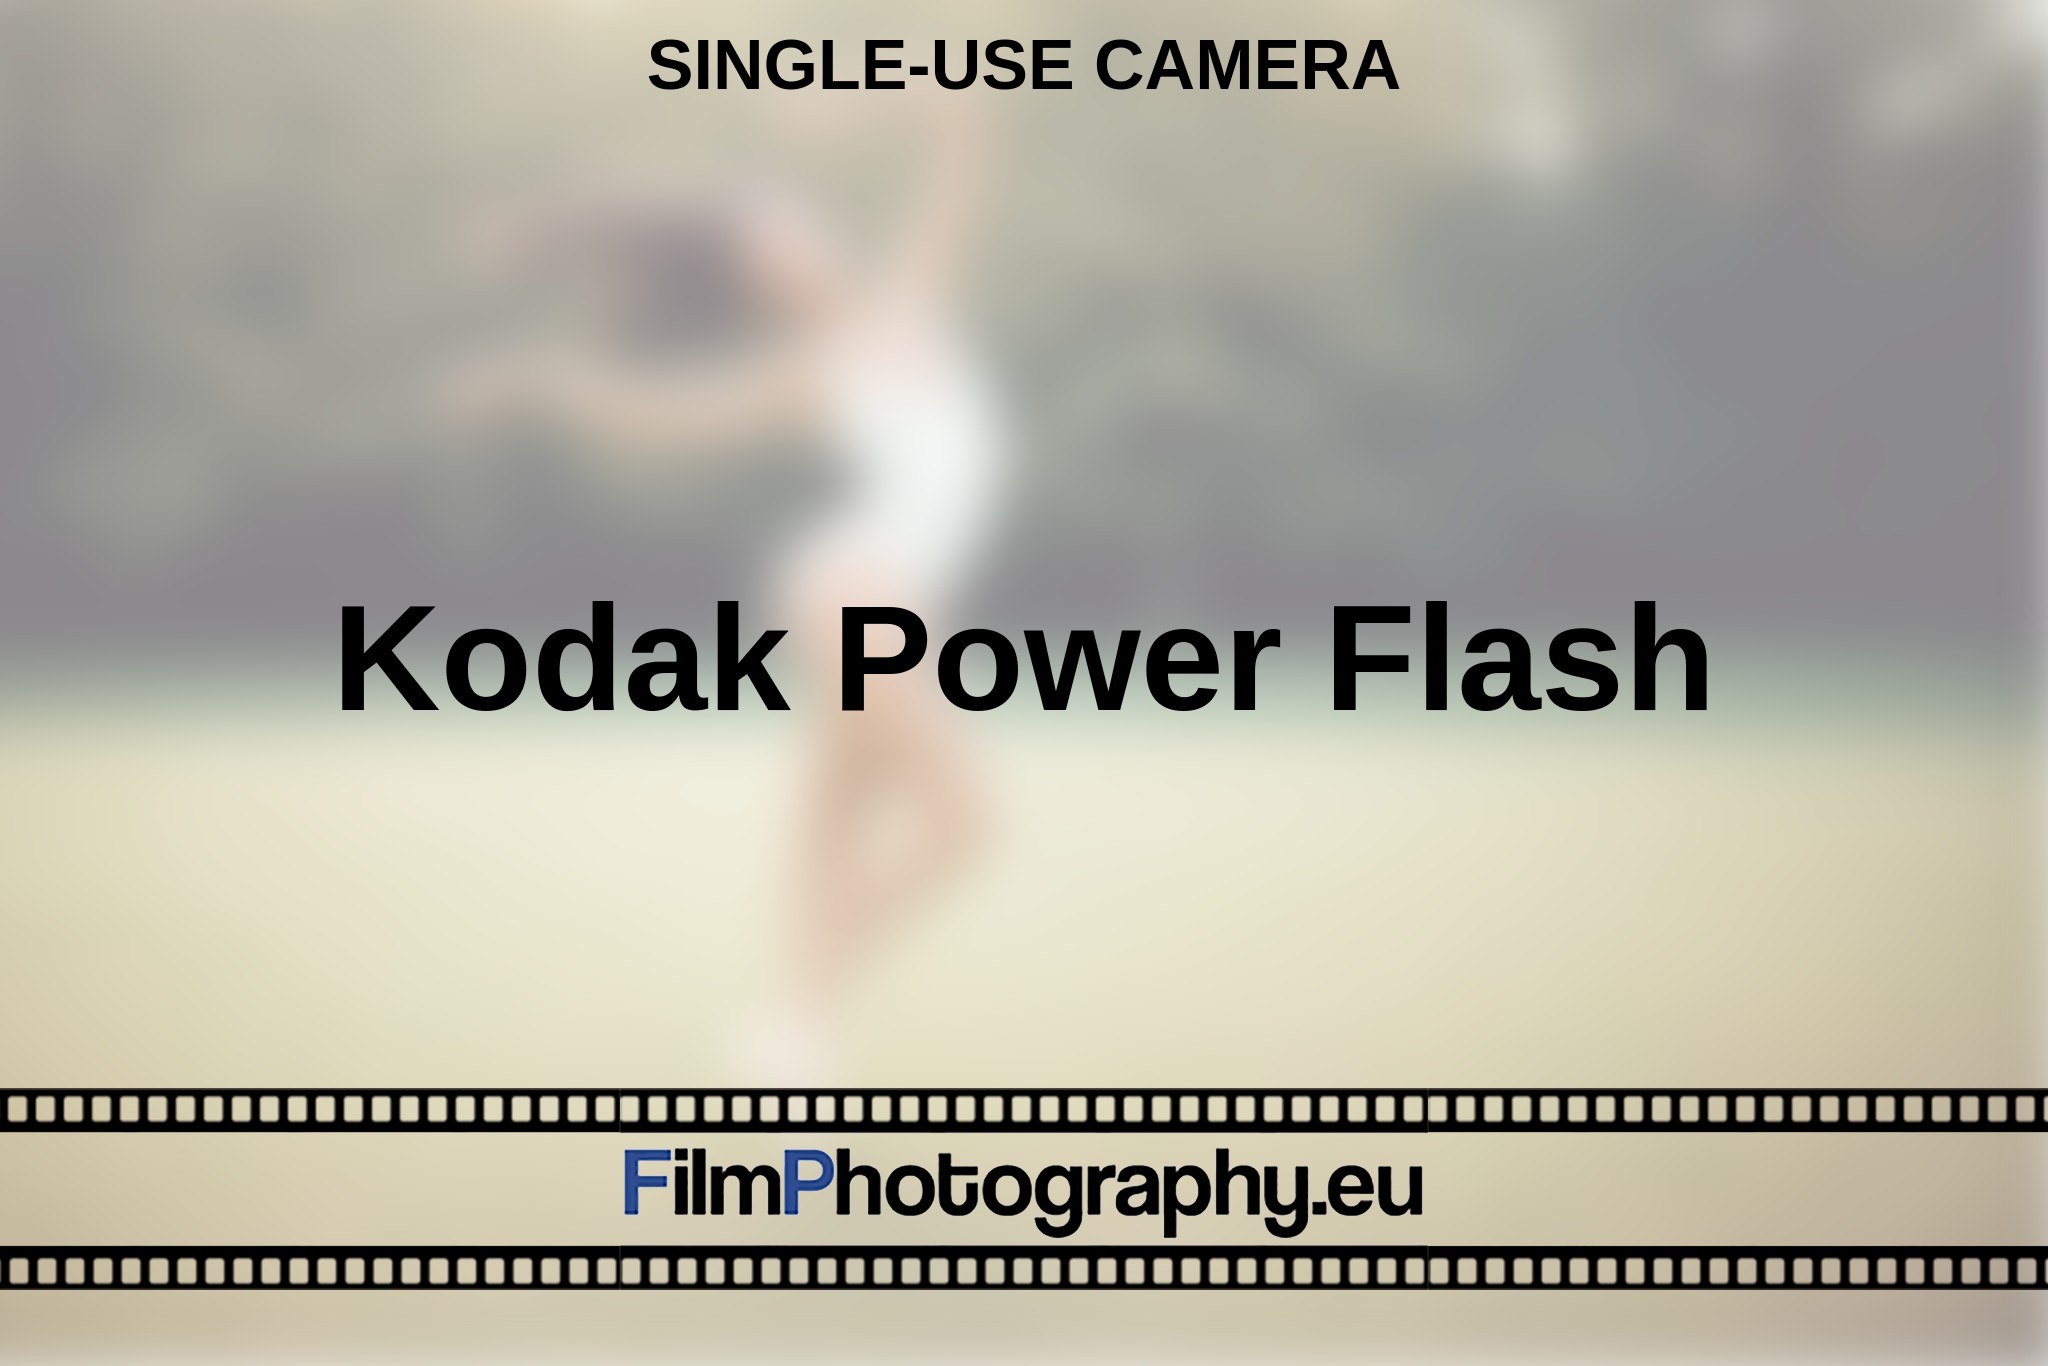 kodak-power-flash-single-use-camera-en-bnv.jpg